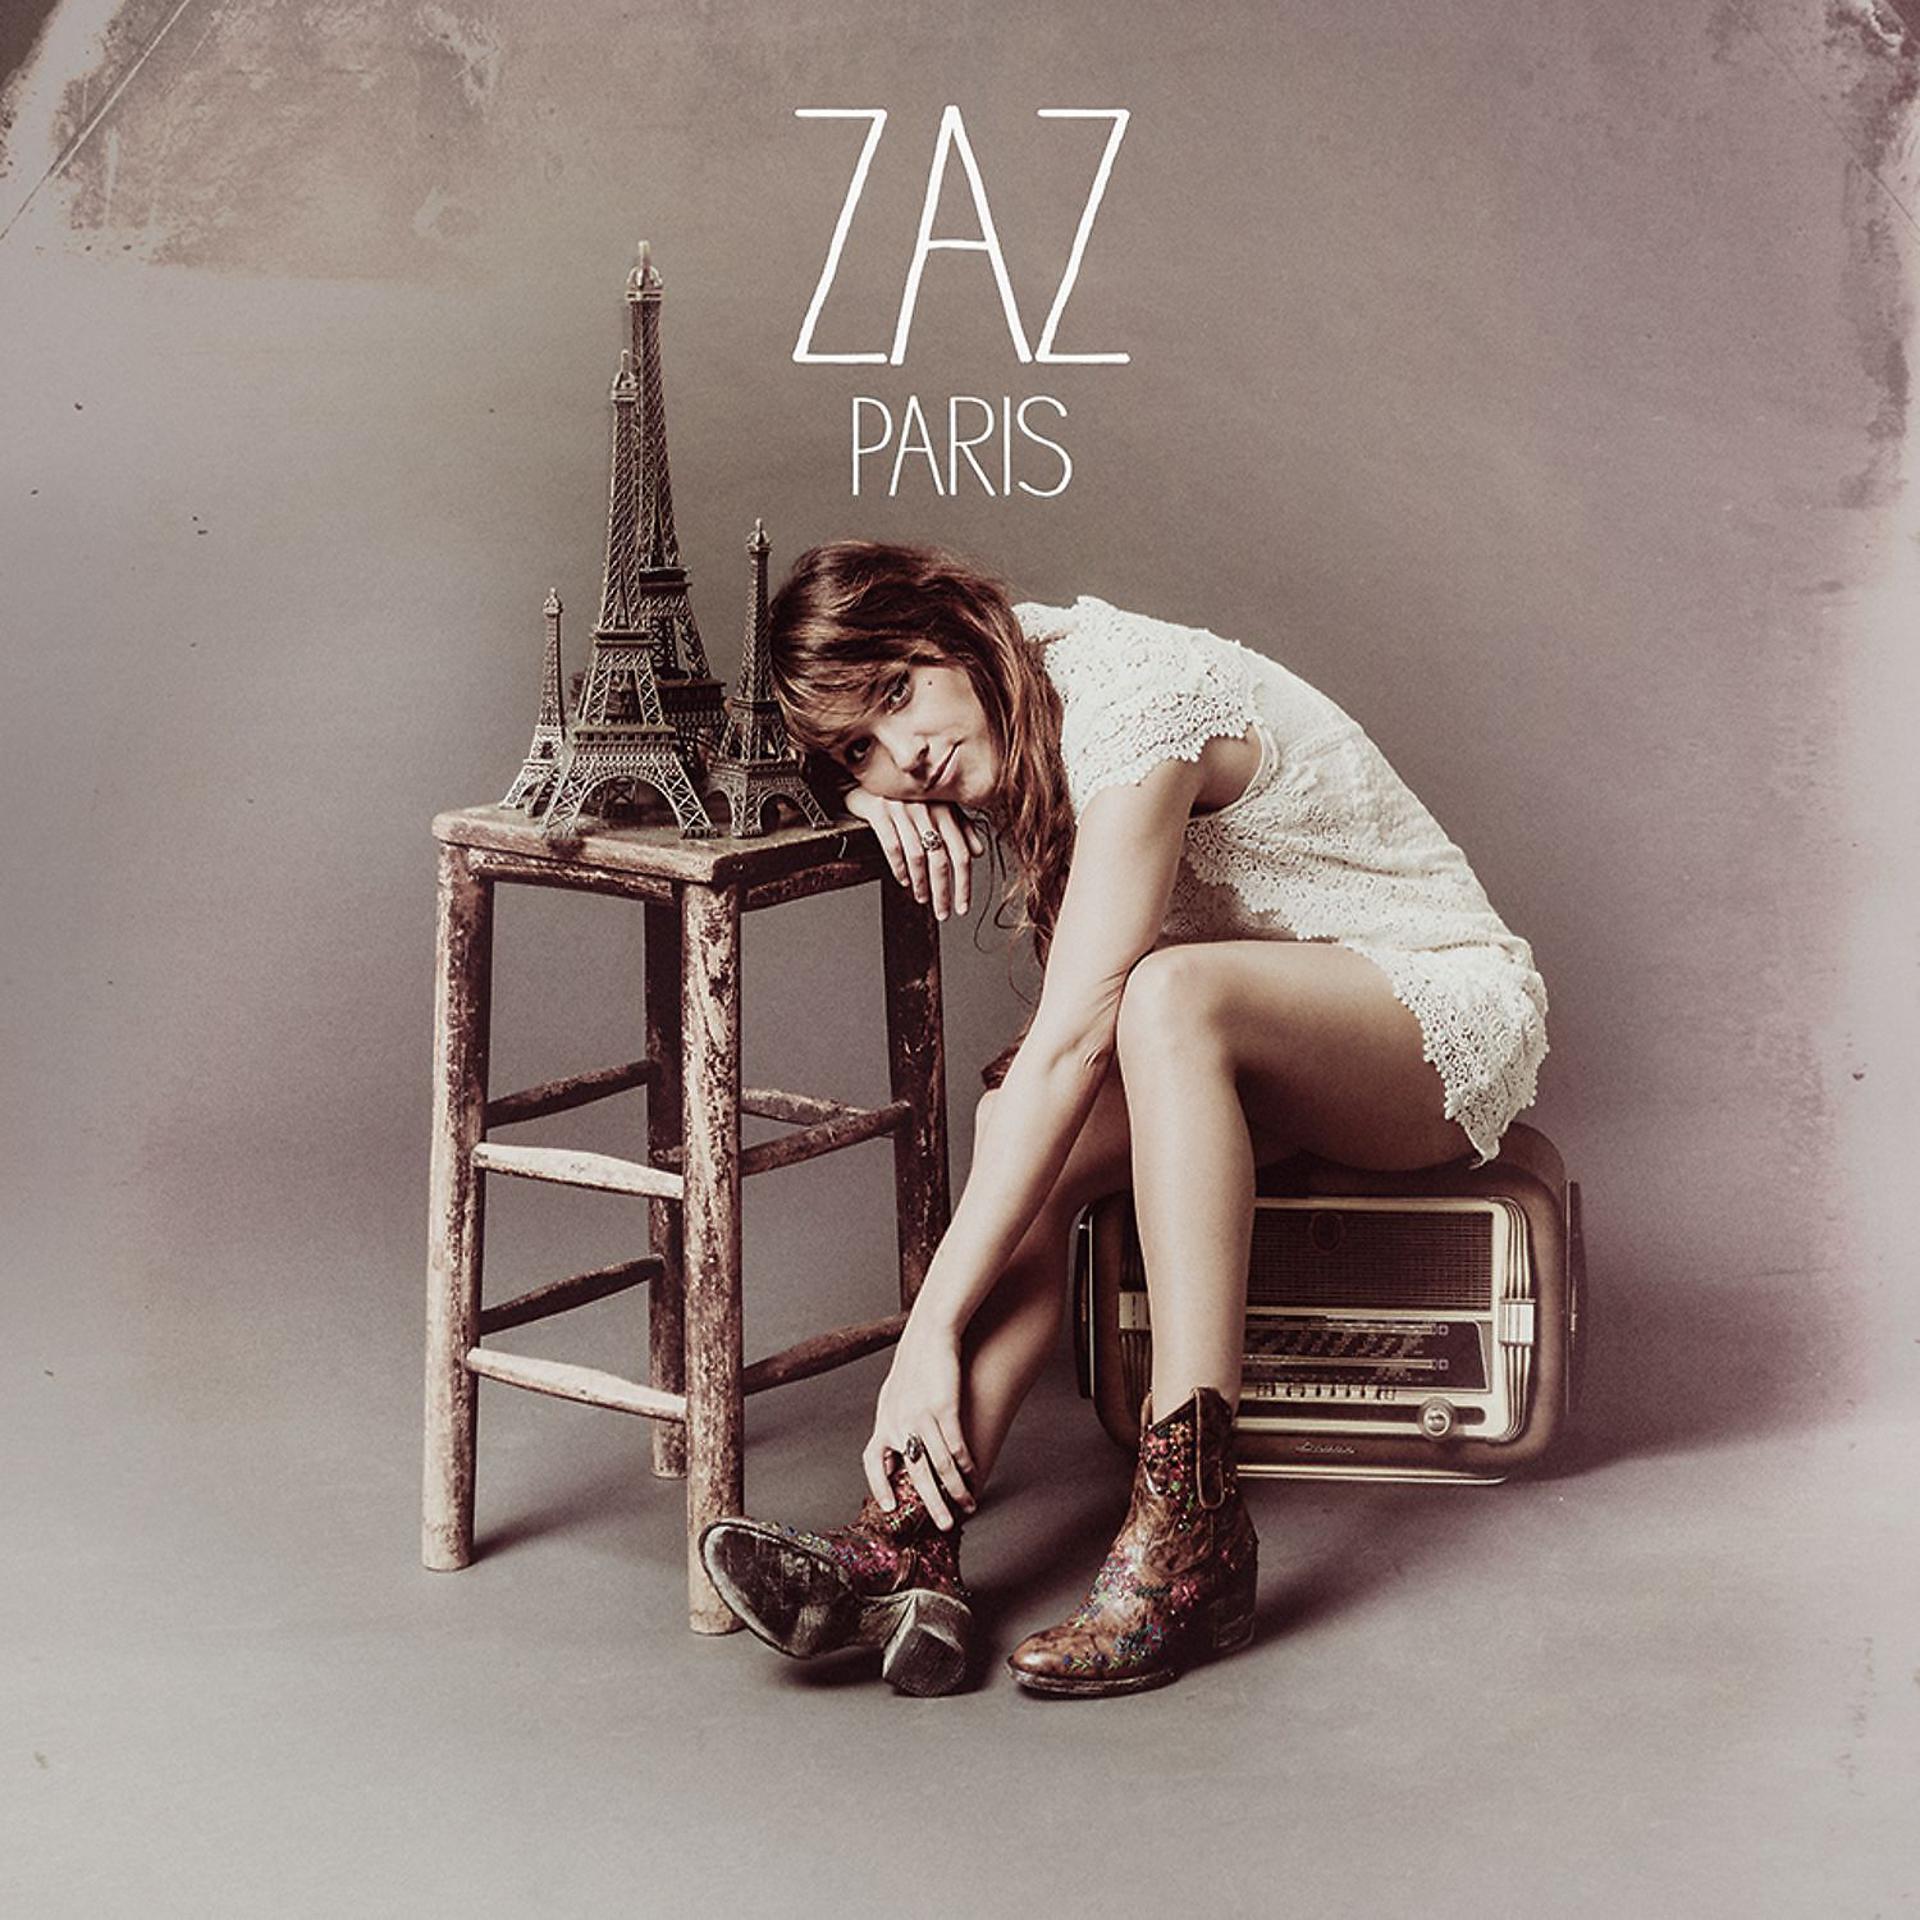 Альбом современной музыки. ZAZ. ZAZ певица. ZAZ "Paris". ZAZ певица обложки.